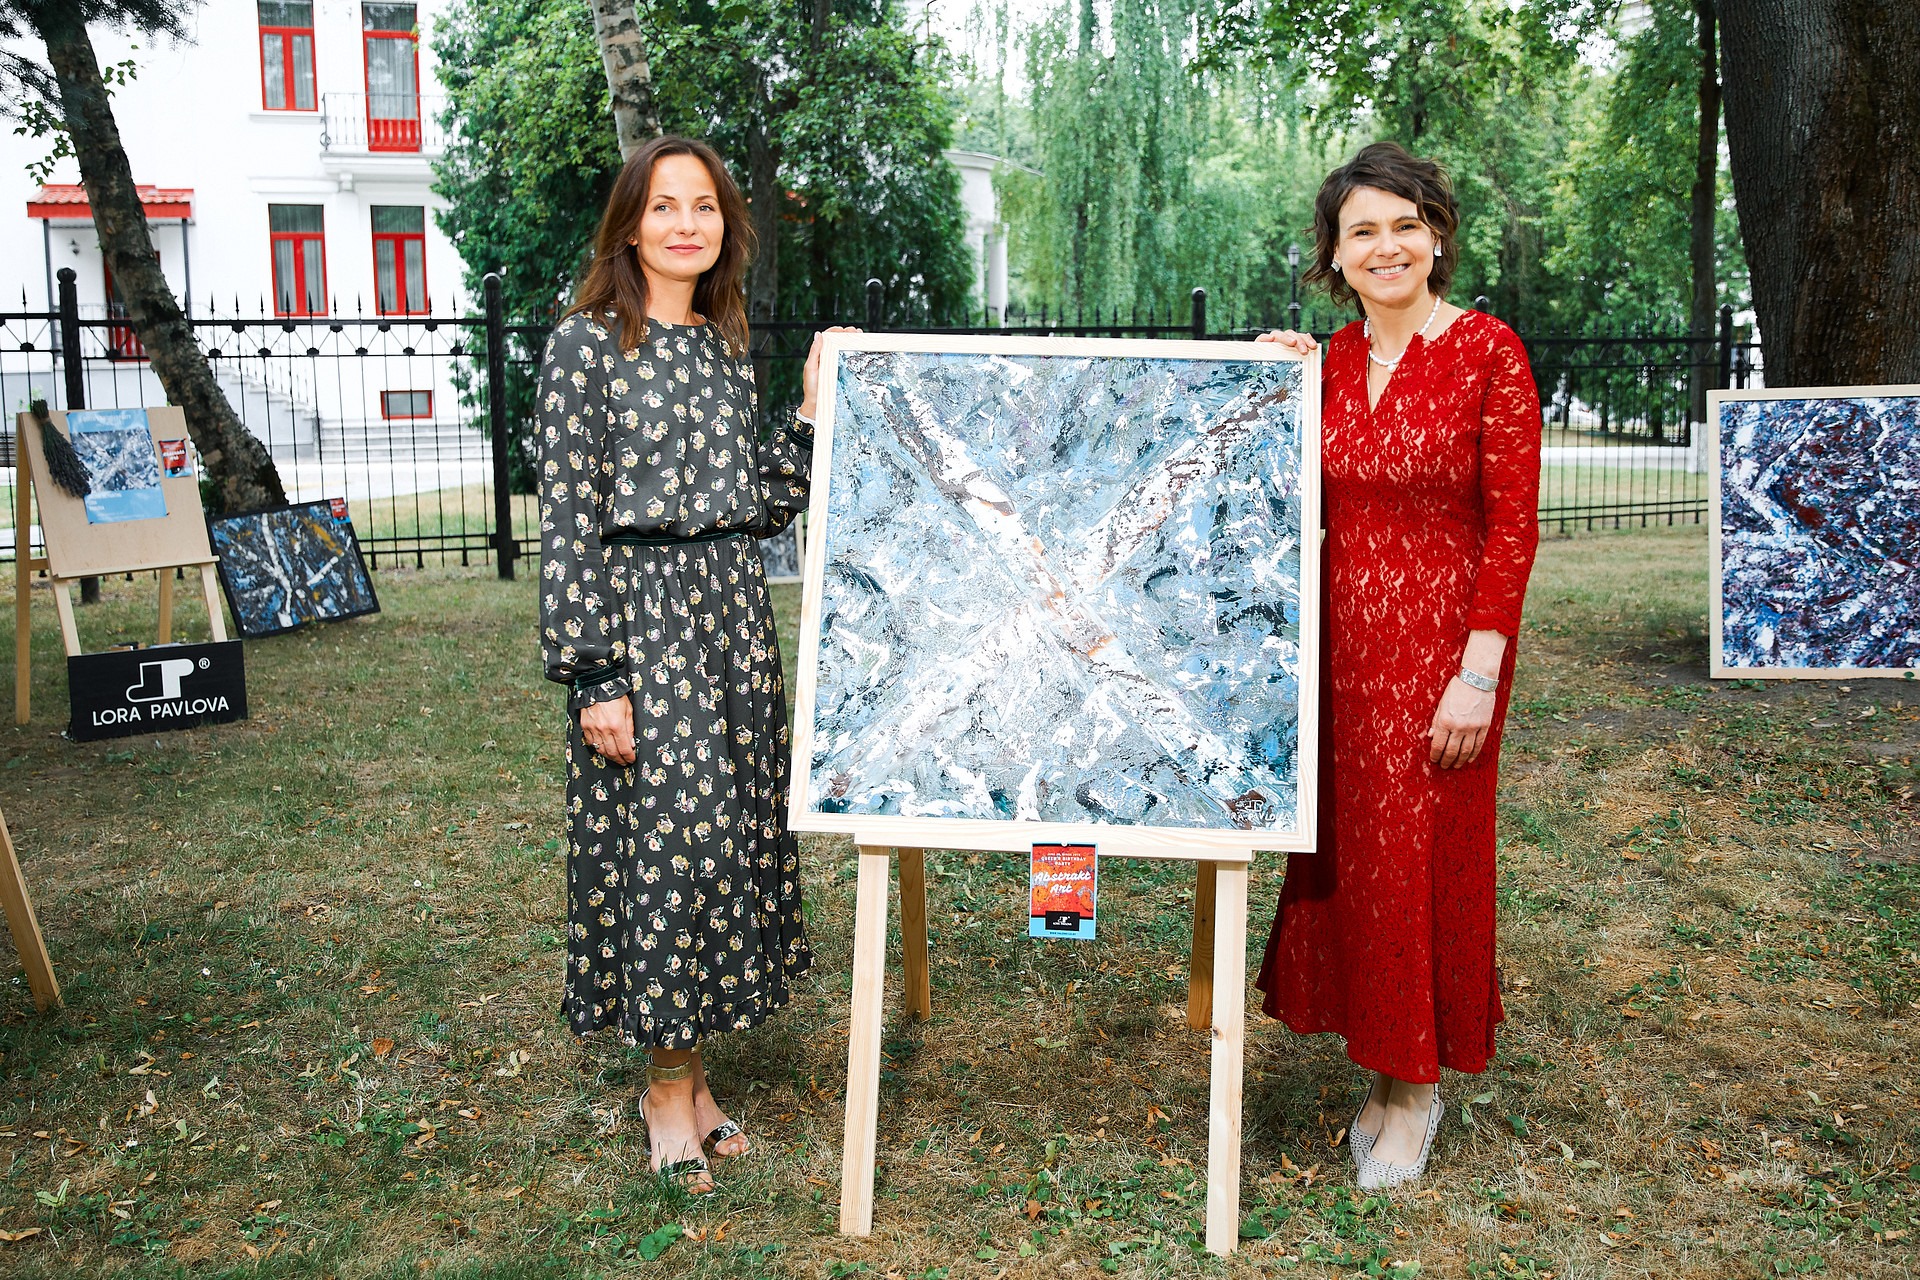  Выставка картин Лоры Павловой на дне рождении королевы 2019